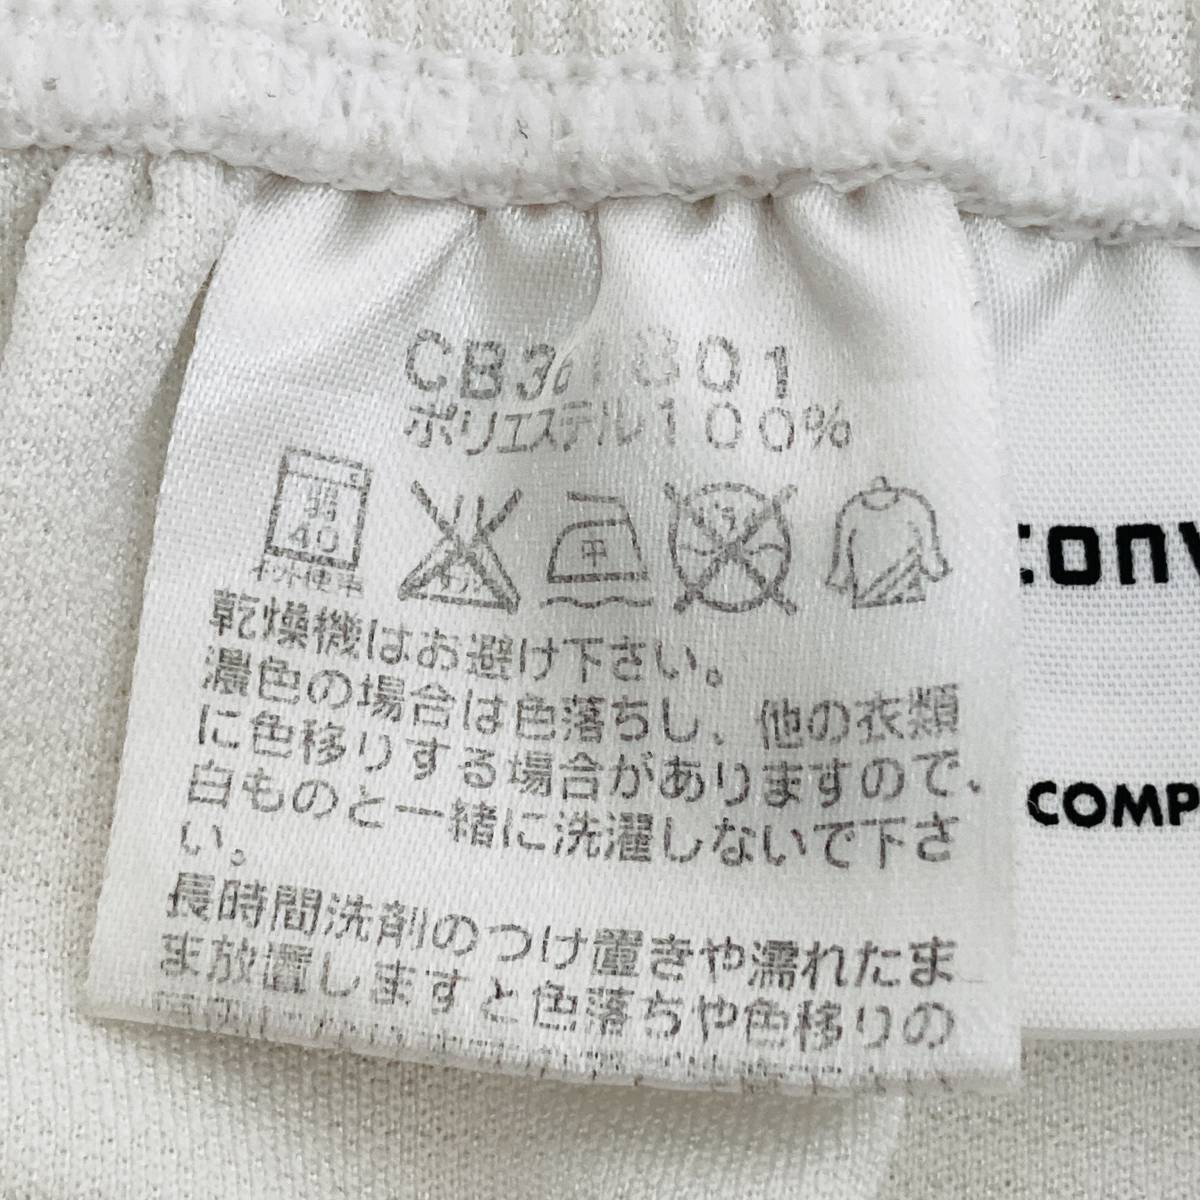 a00504 прекрасный товар CONVERSE Converse шорты шорты талия резина корзина часть . размер L белый Logo вышивка спорт универсальный 